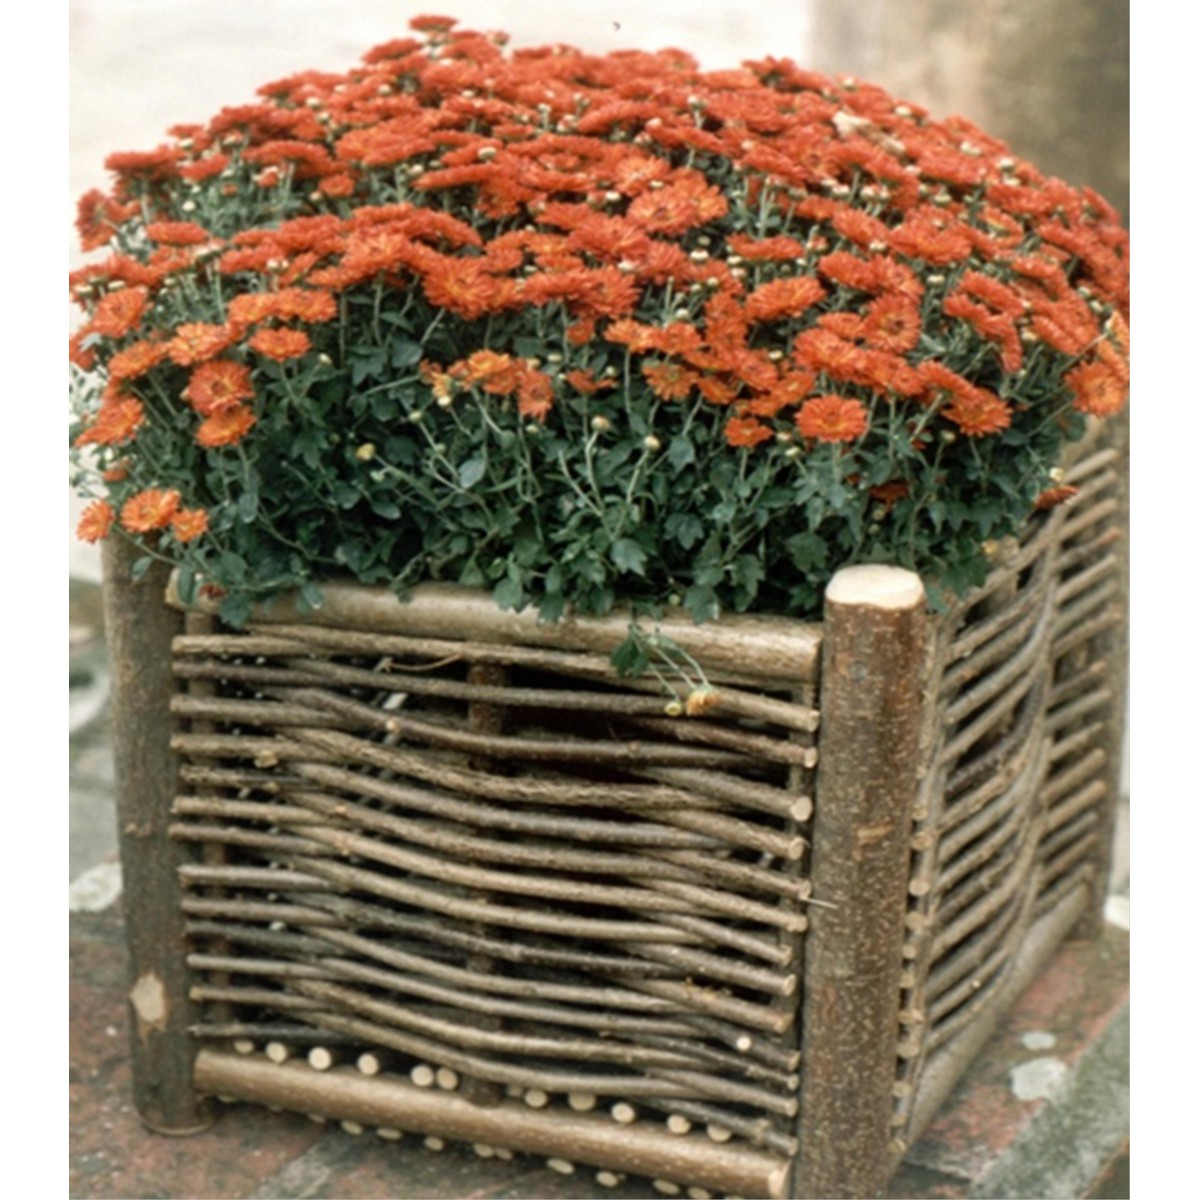   cache pots flower basket 1  40x40x40cm